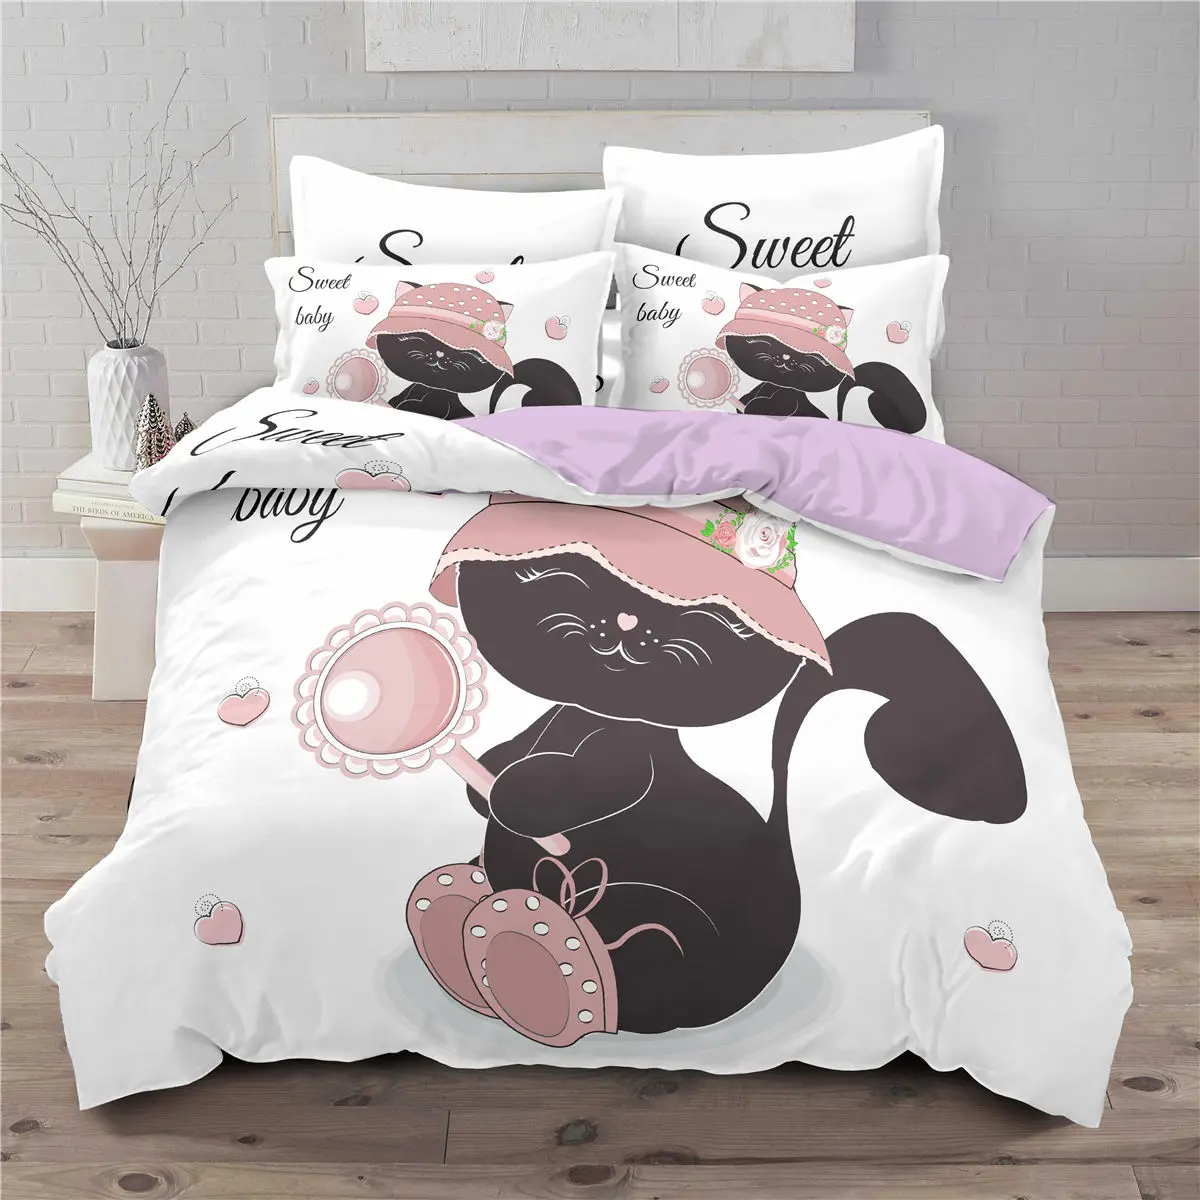 

Пододеяльник с милым 3d-рисунком кролика/кота, роскошный комплект постельного белья с изображением мультяшных животных, одеяло, двуспальный...